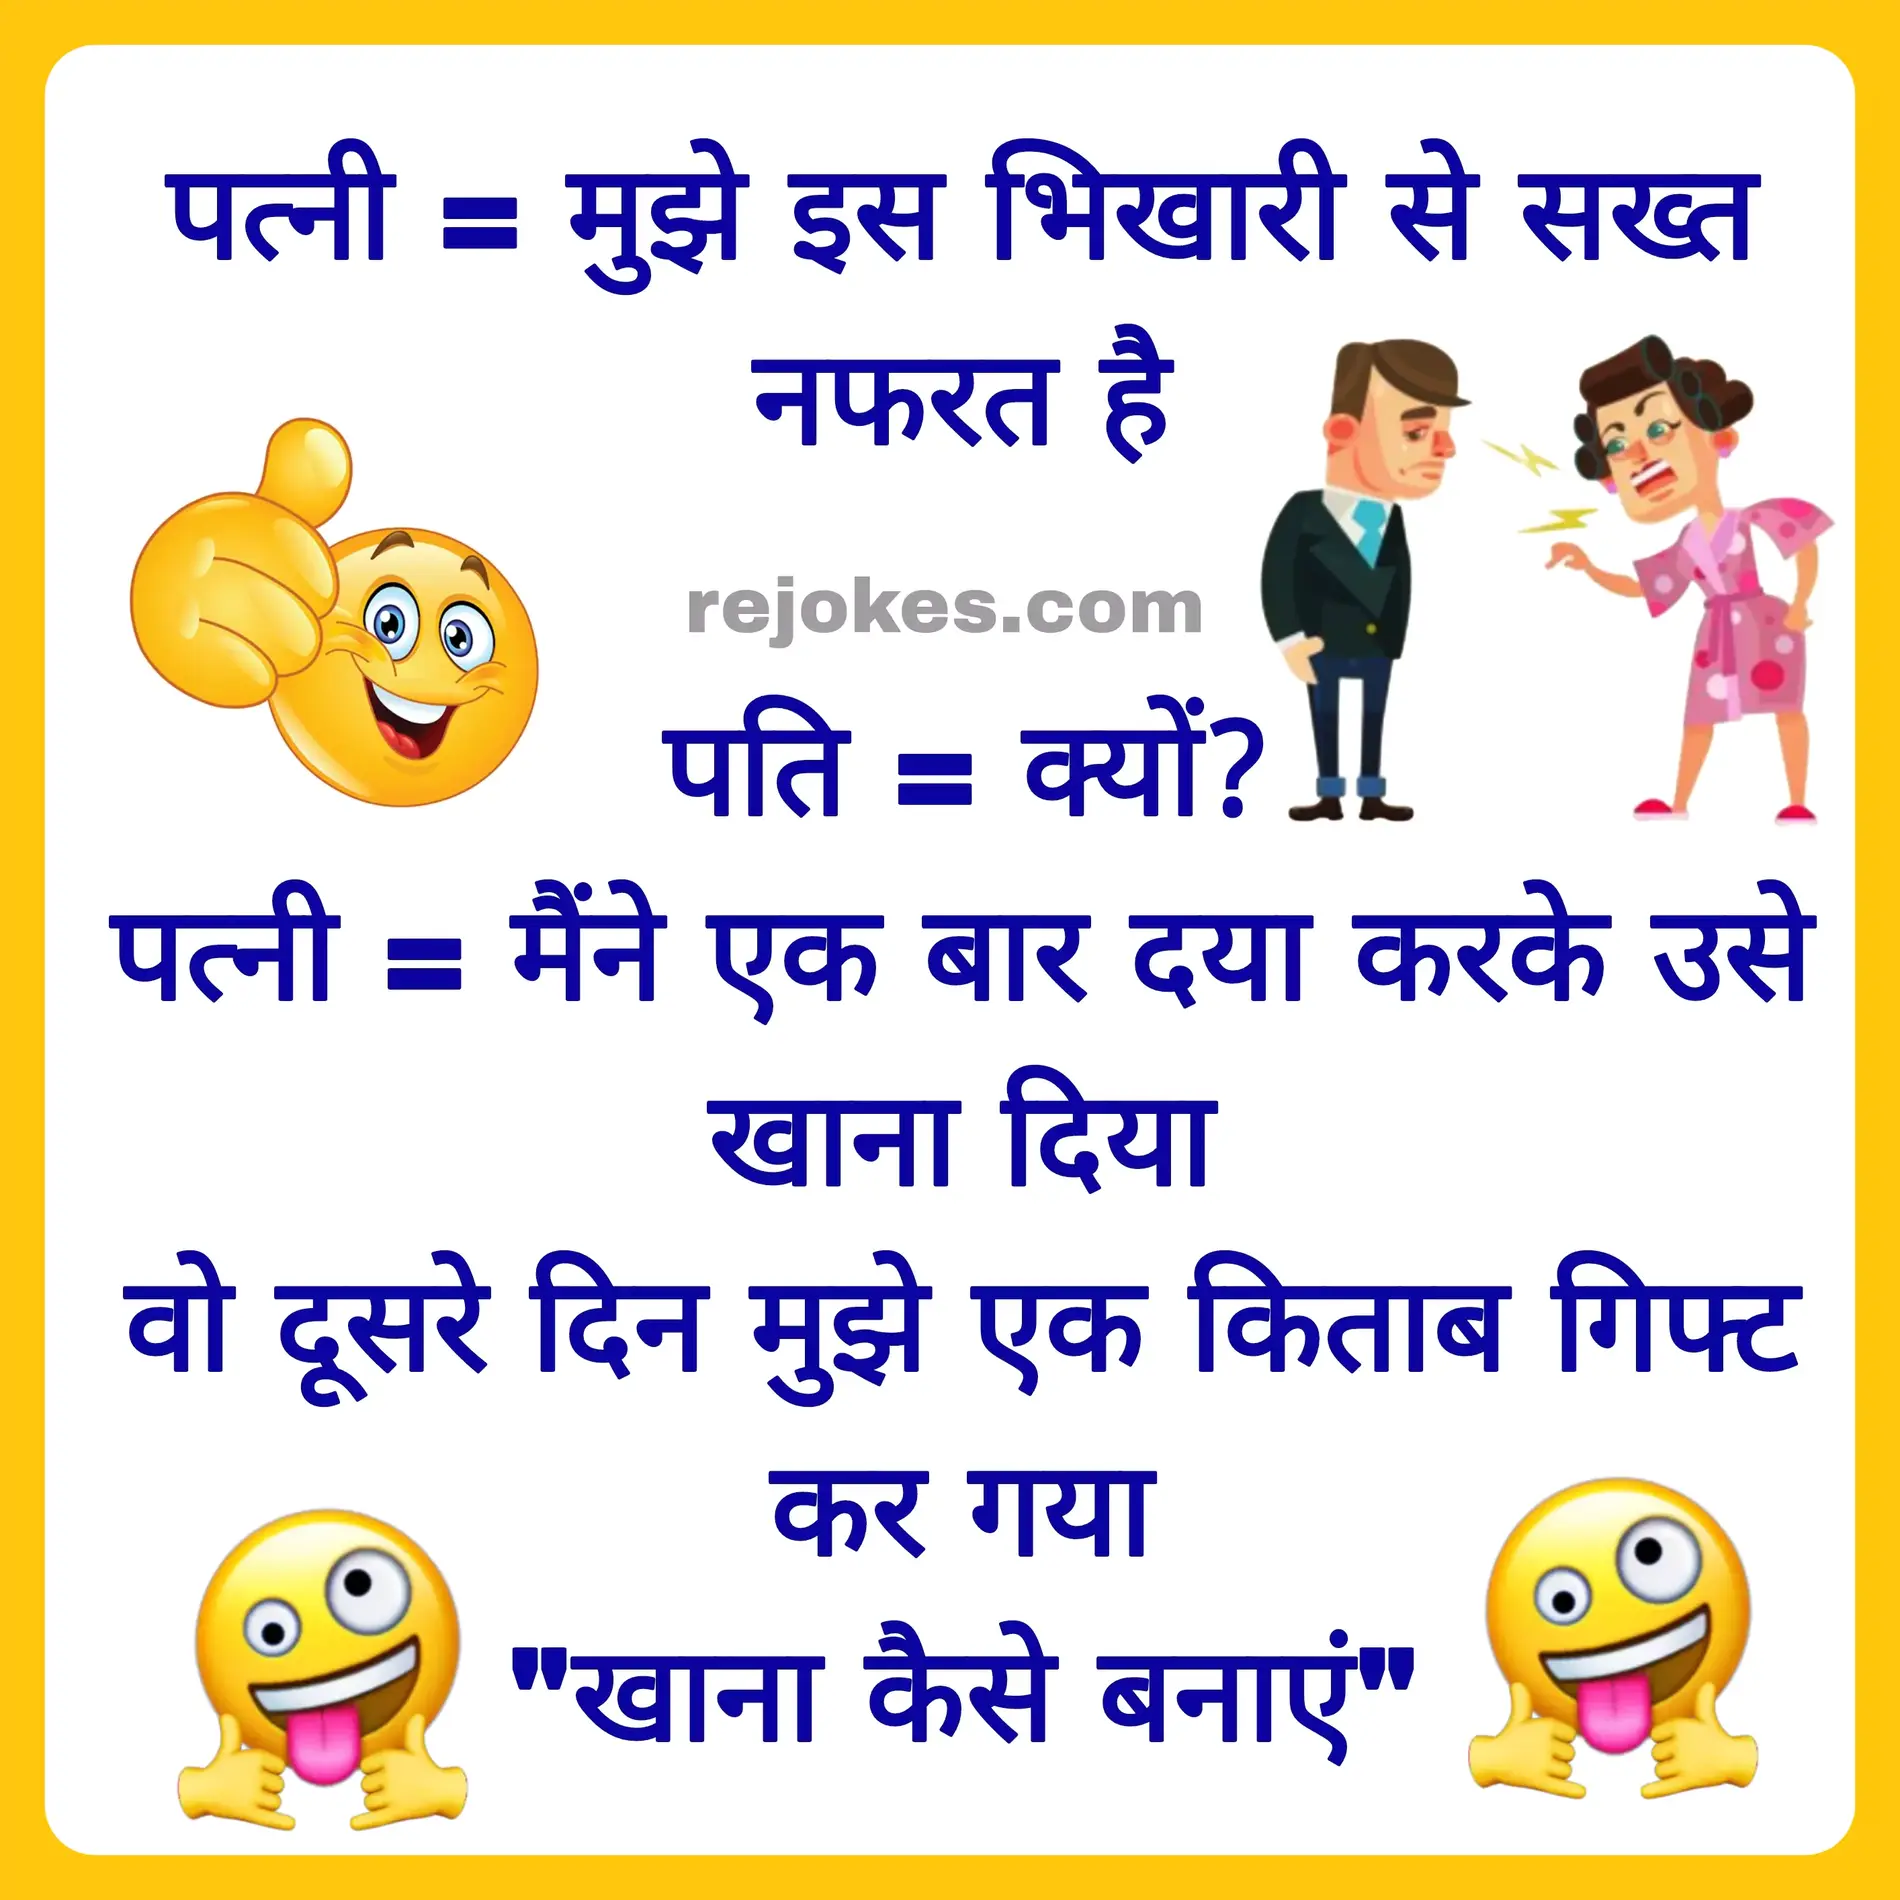 bhikari jokes in hindi images